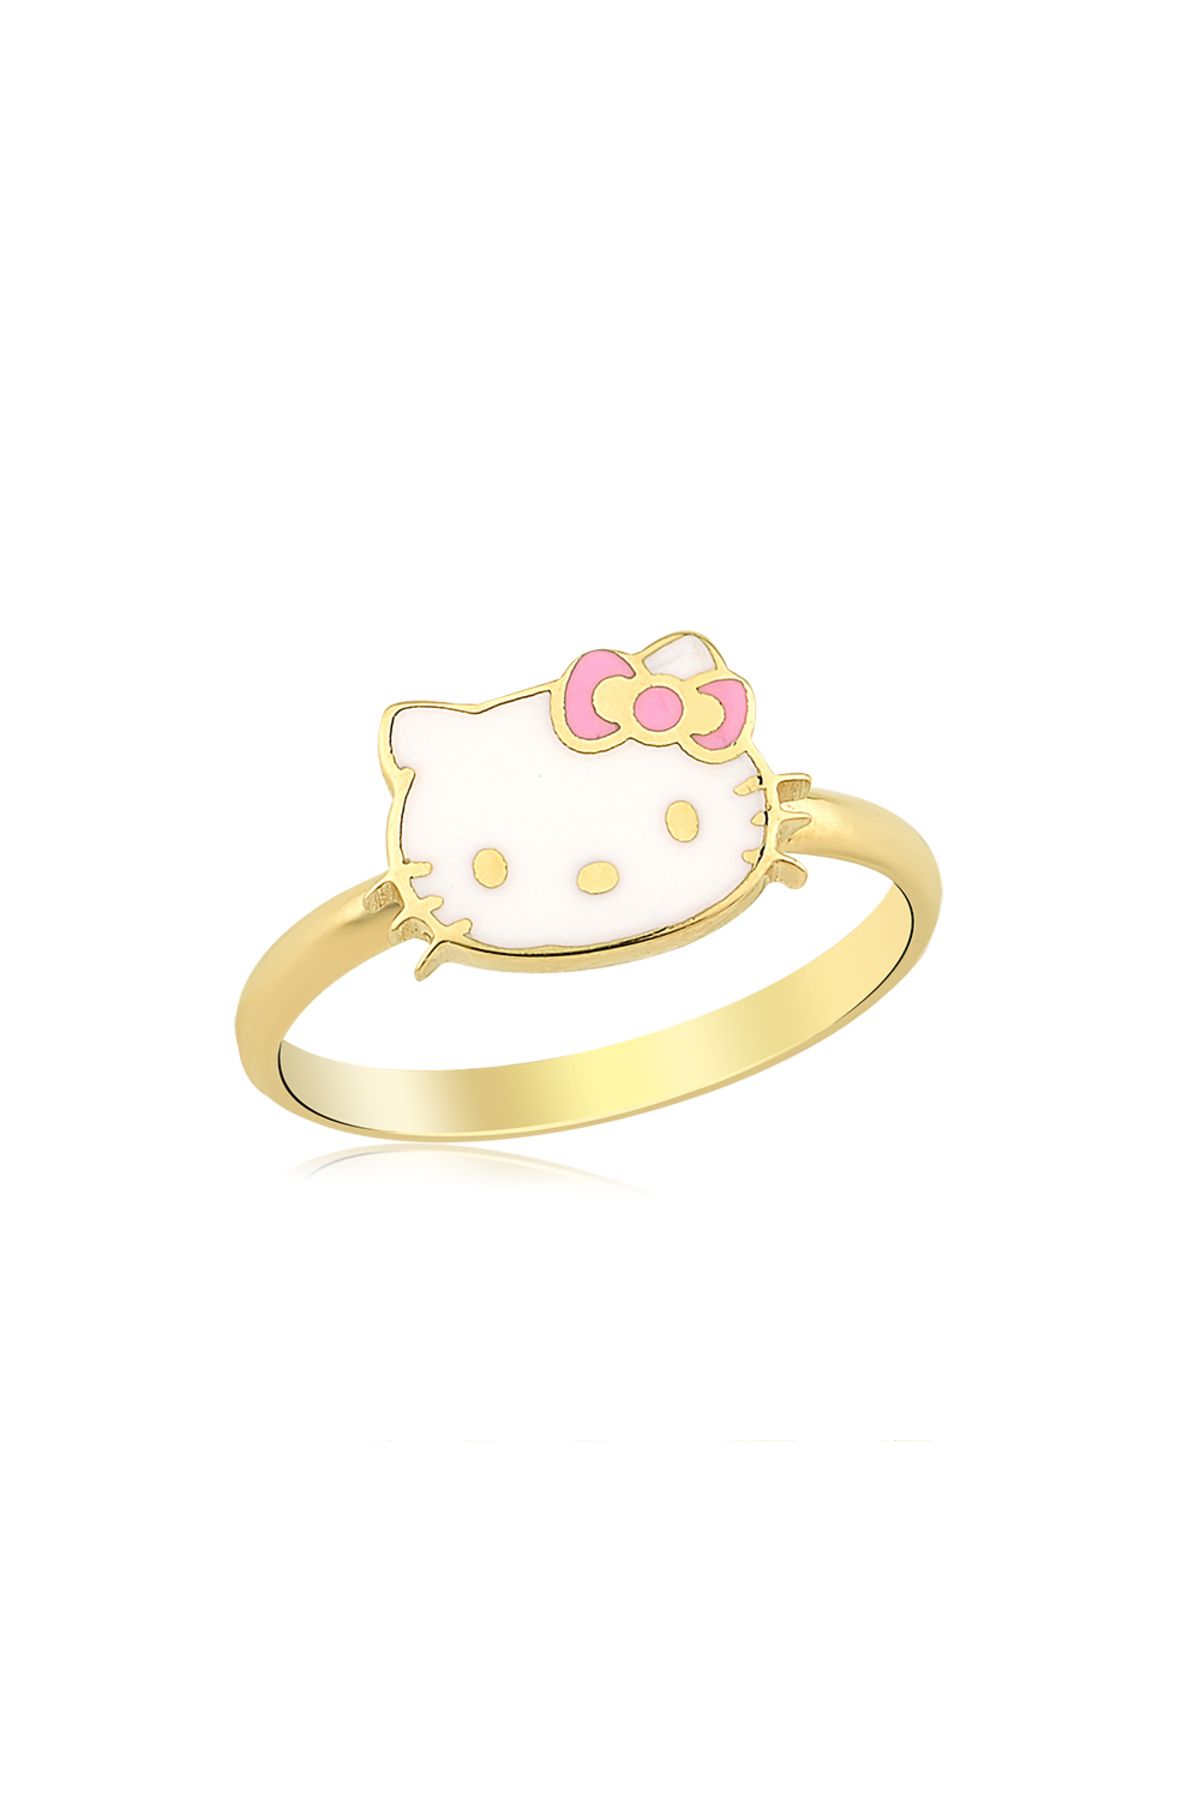 Hello Kitty Altın Yüzük Yz0352